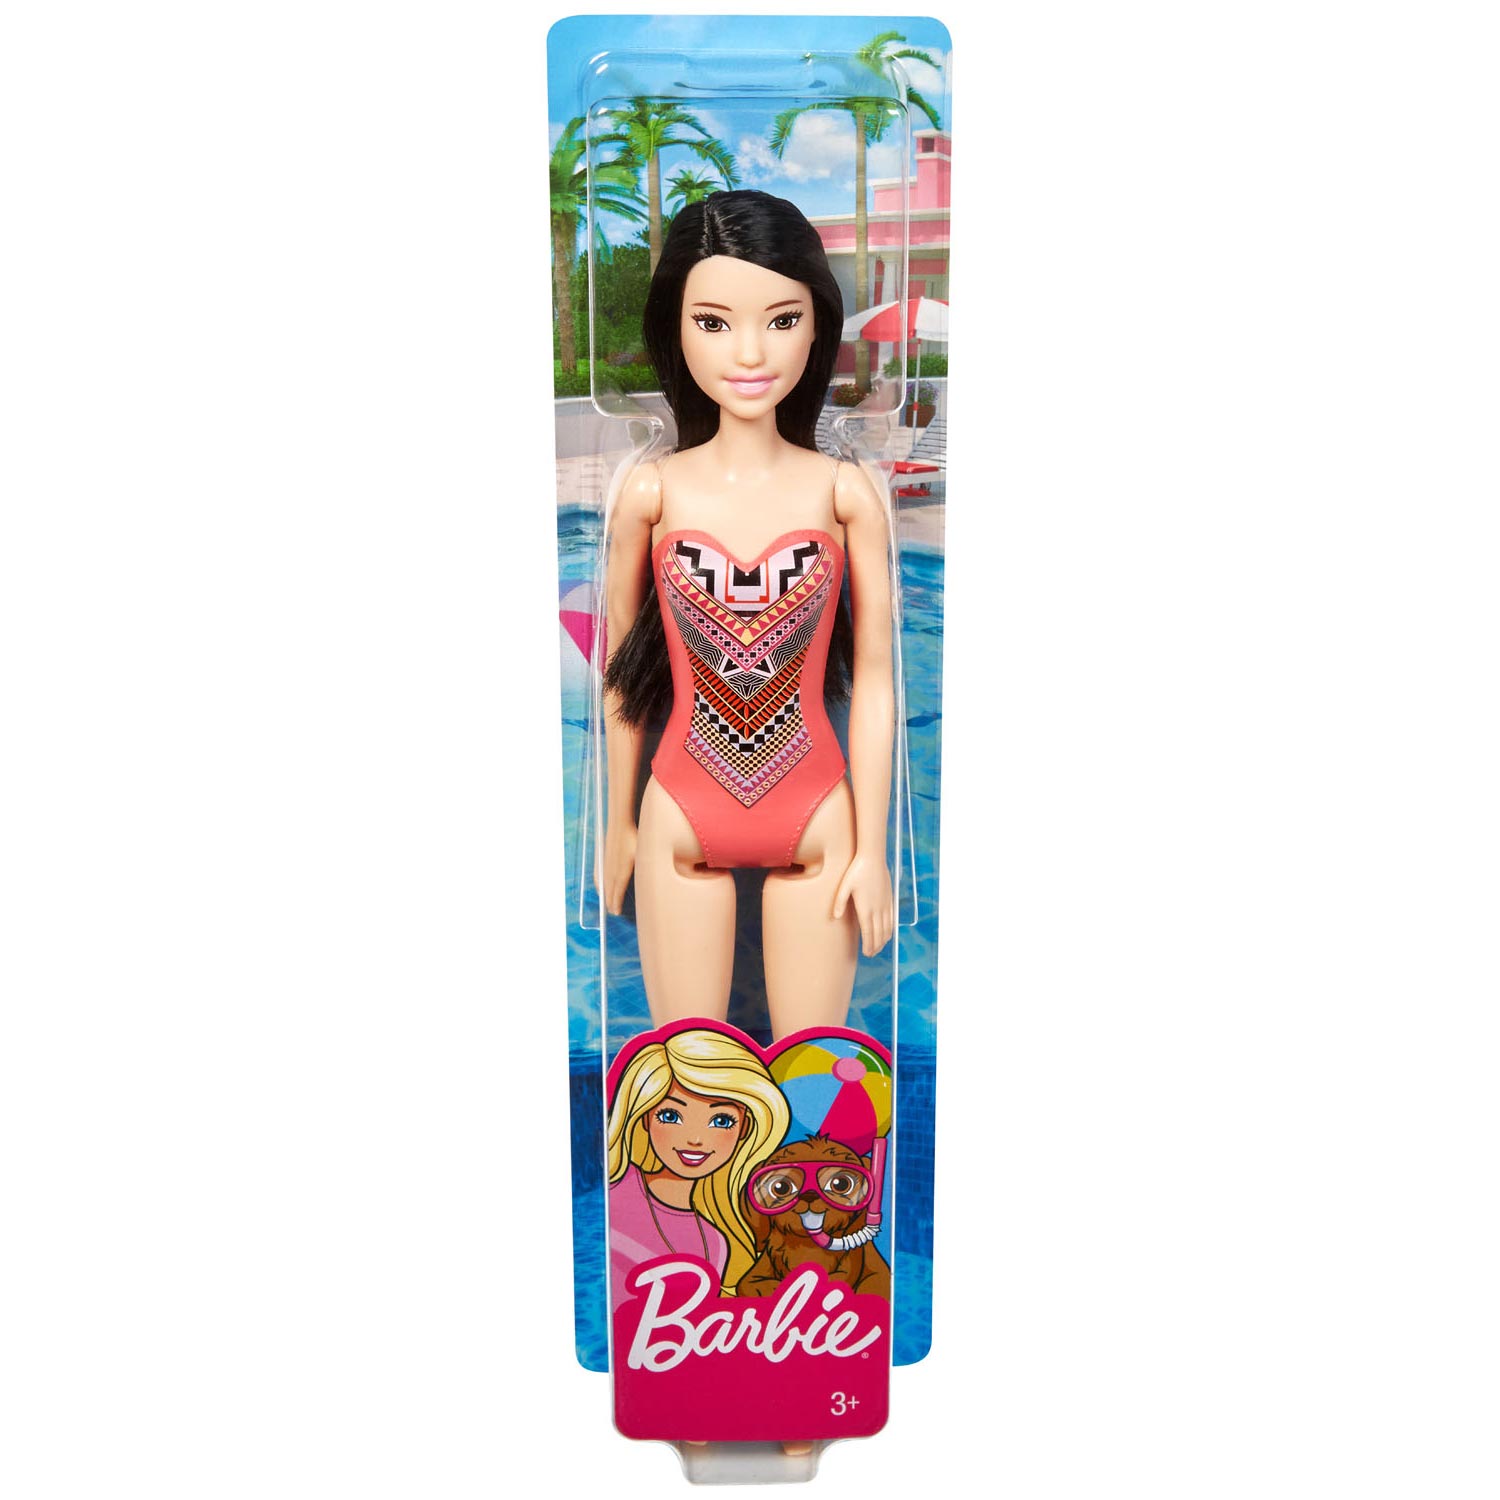 Barbiepop Beach Pop - Zwart Haar met Badpak